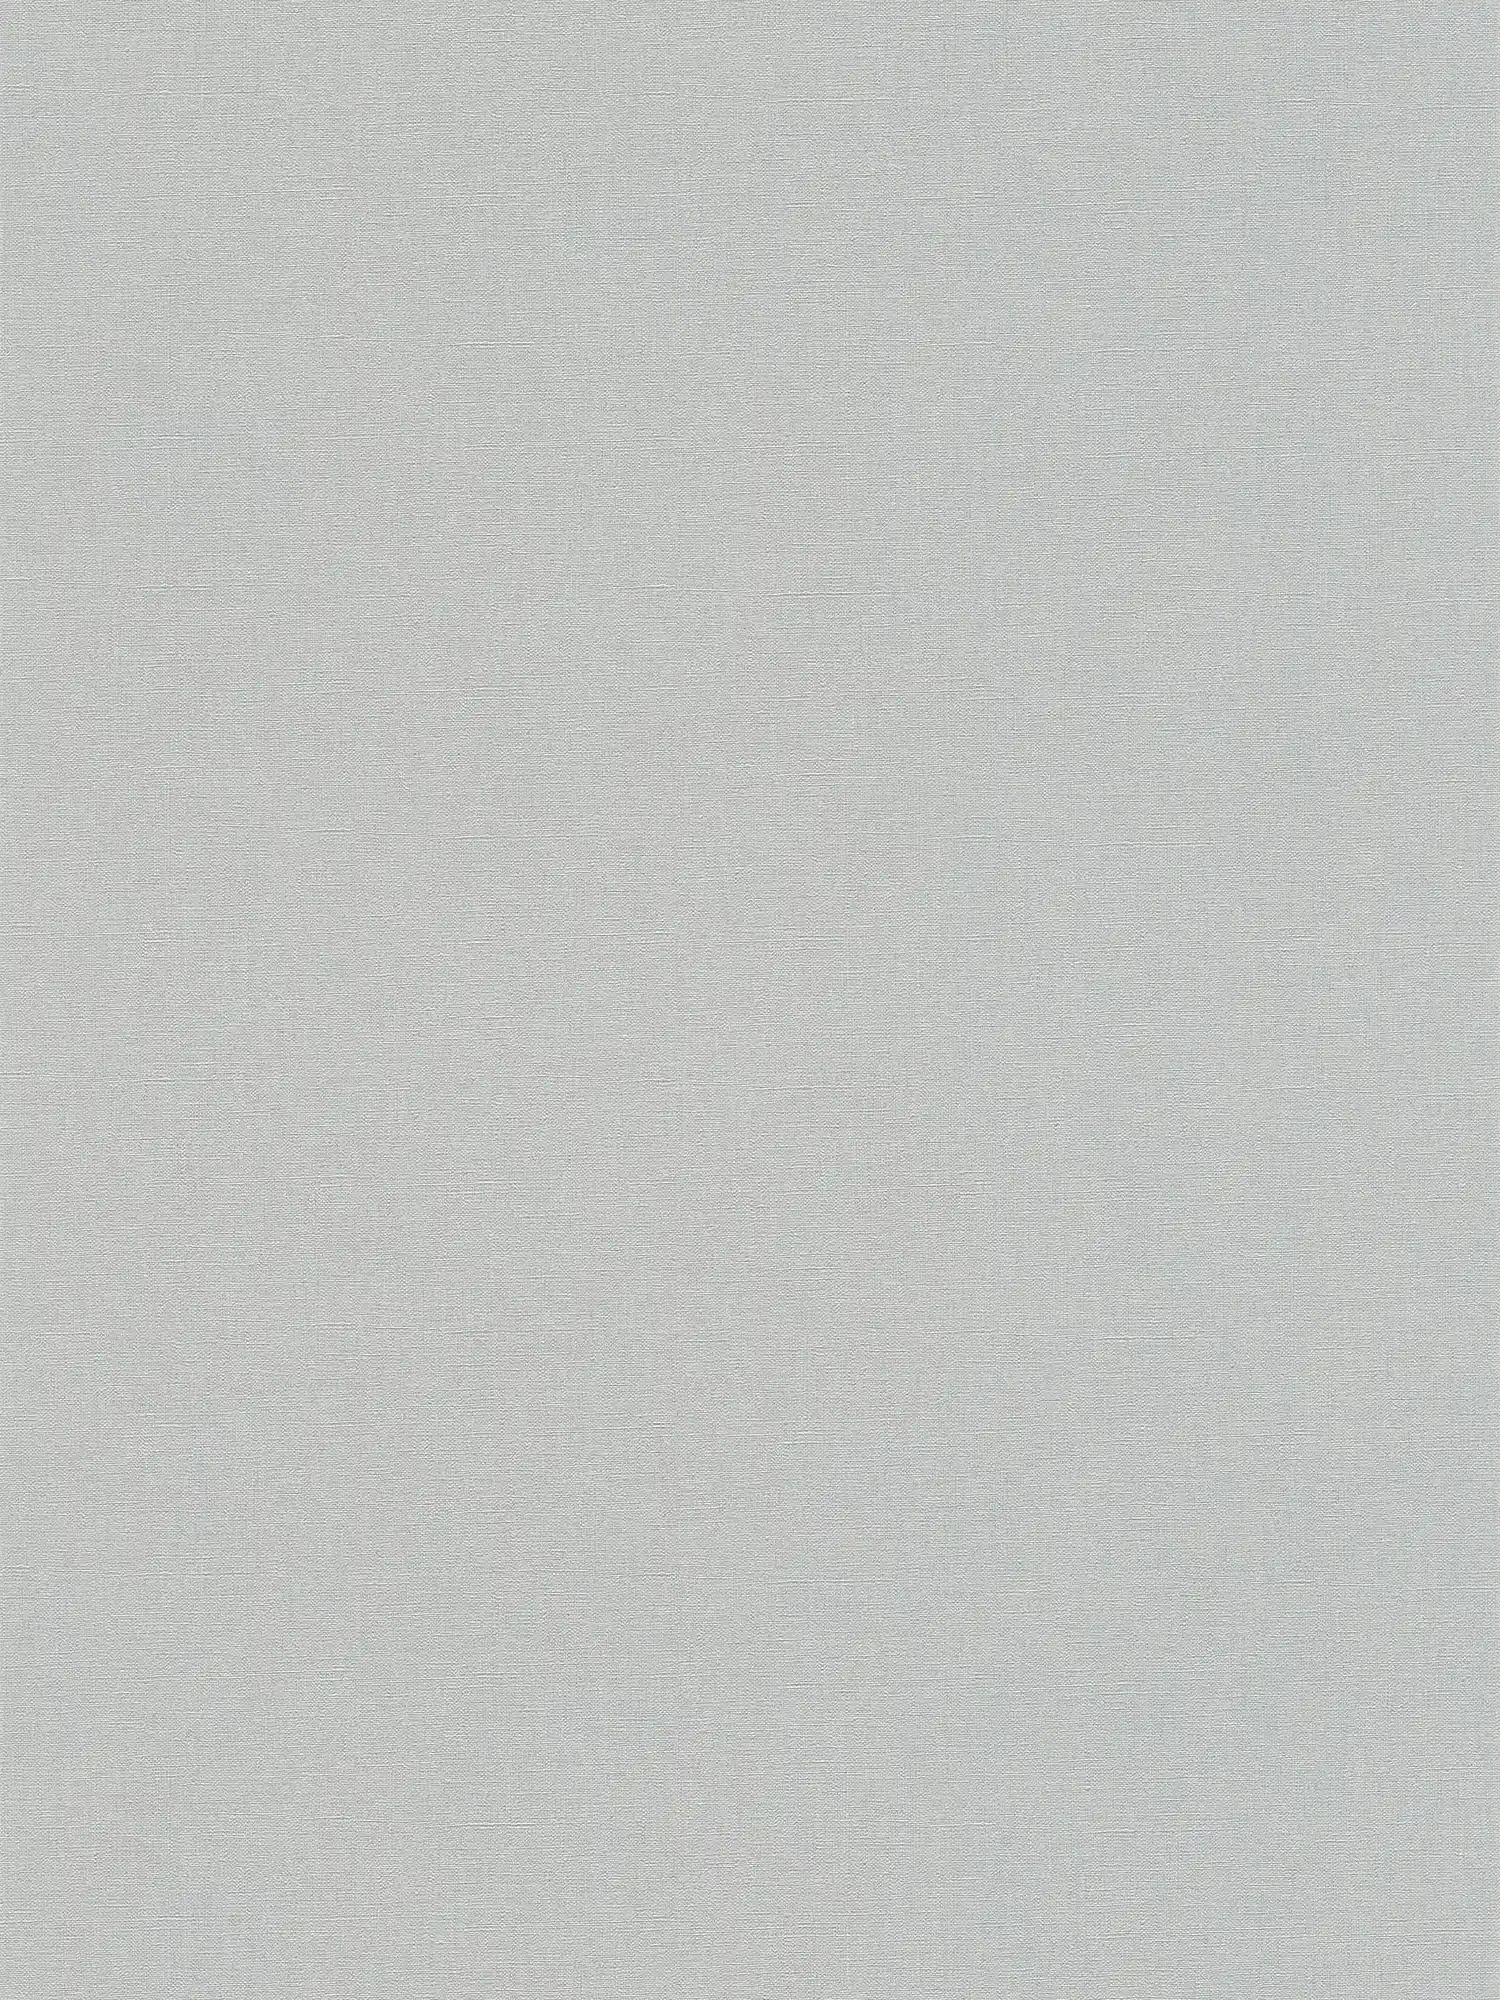 Einfarbige Uni Tapete mit leichter Strukturoptik – Grau, Dunkelgrau
